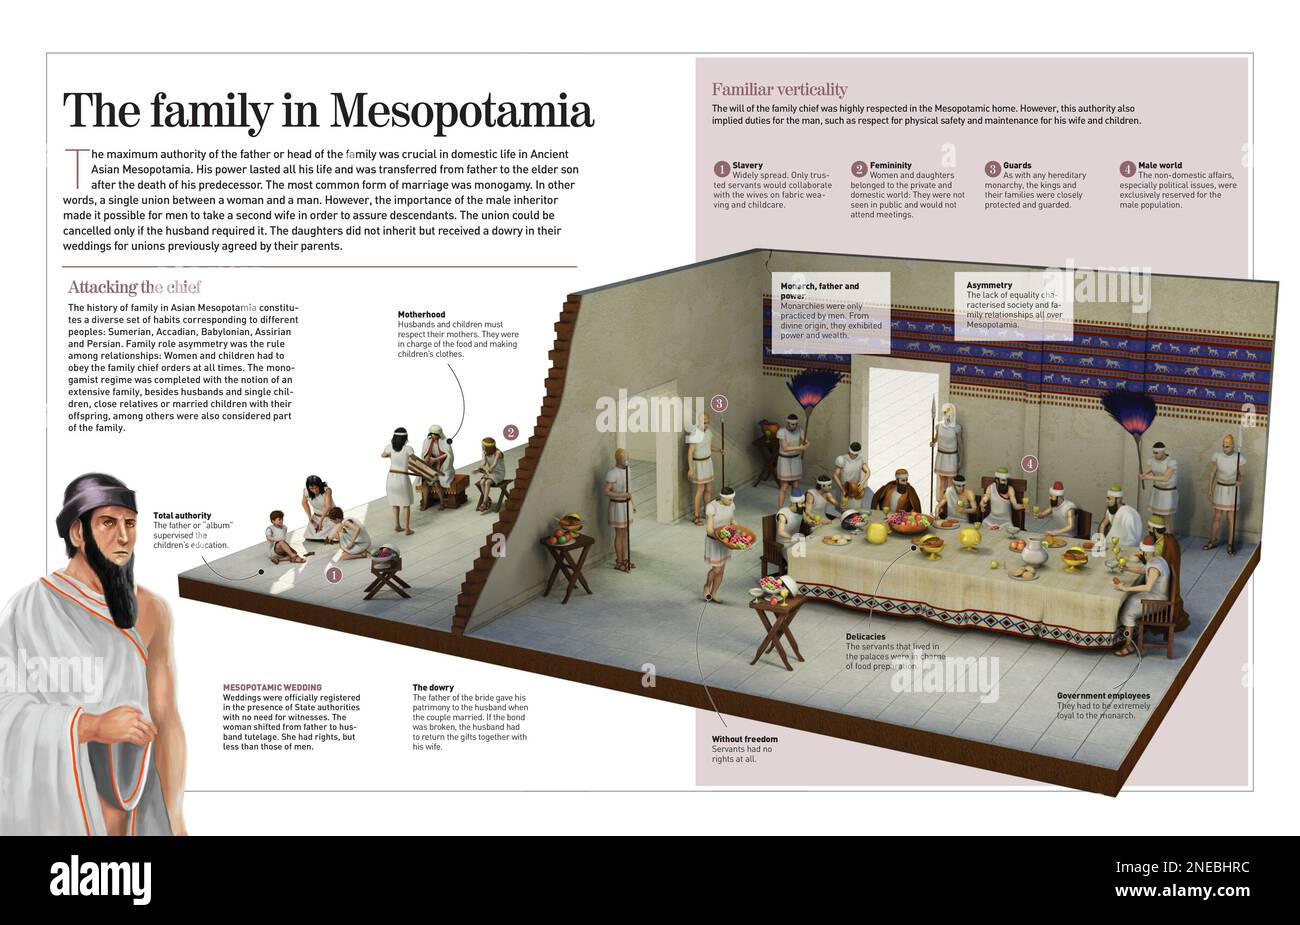 Infografica sull'organizzazione asimmetrica delle famiglie in Mesopotamia del 1750 a.C. dove il padre o "album" era la più alta autorità. [Adobe InDesign (.indd); 4960x3188]. Foto Stock